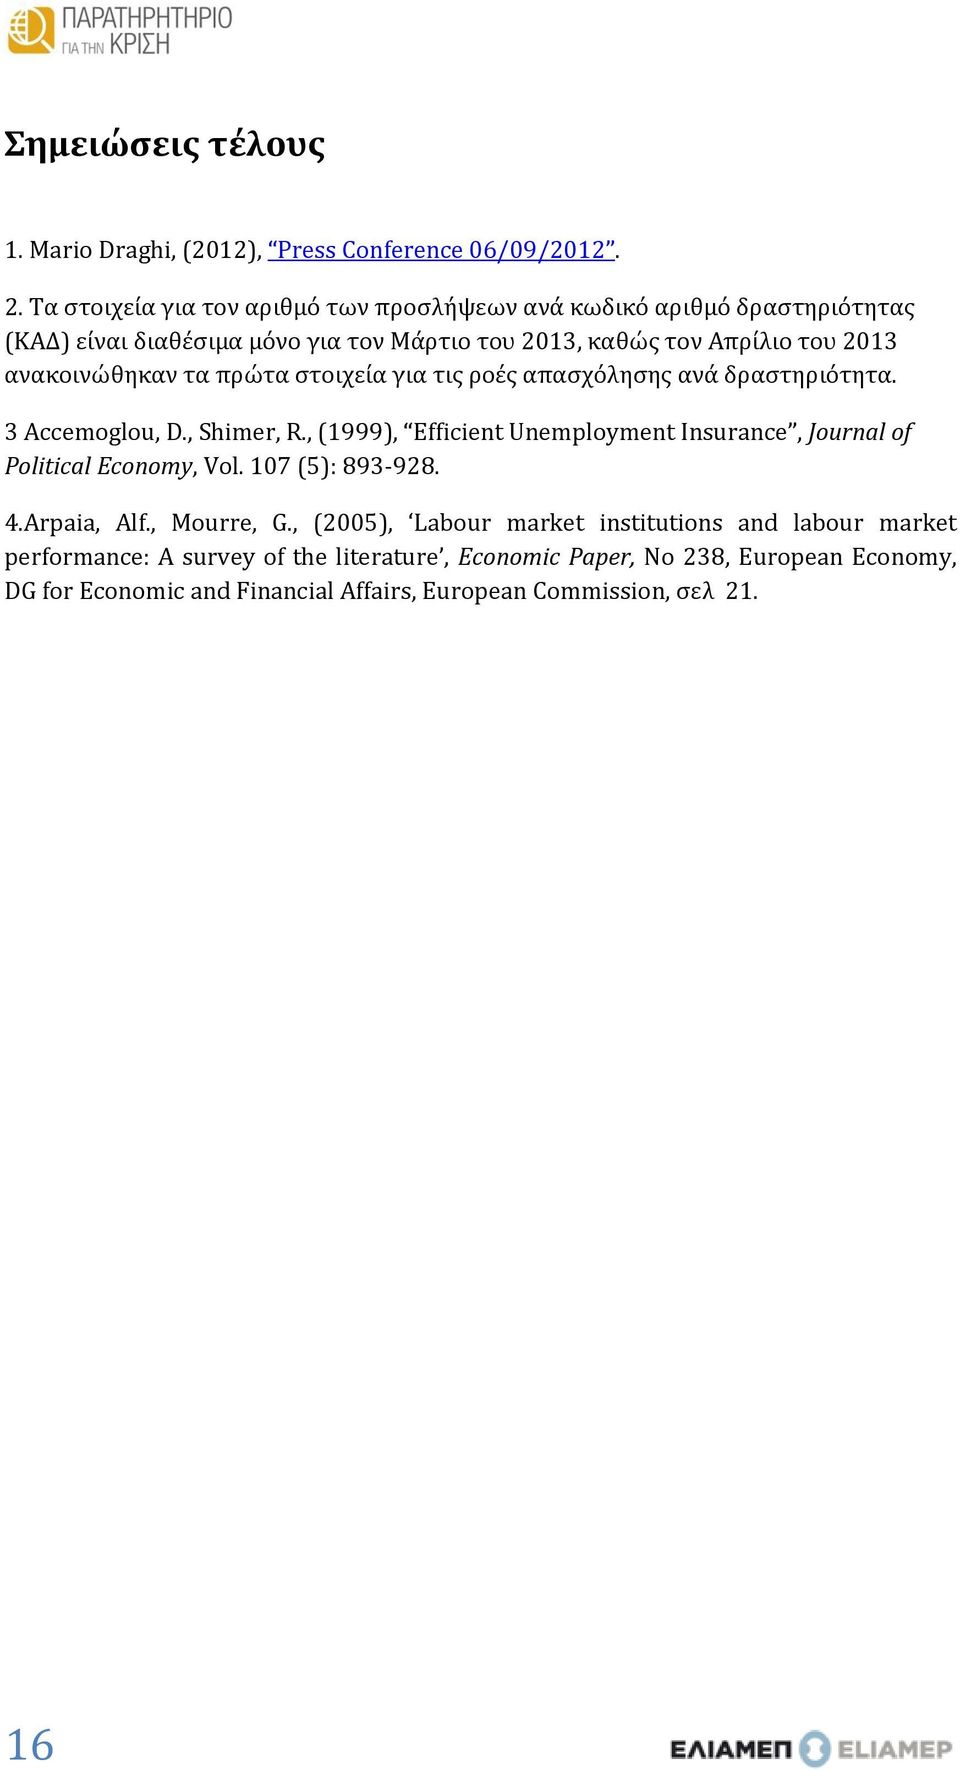 ανακοινώθηκαν τα πρώτα στοιχεία για τις ροές απασχόλησης ανά δραστηριότητα. 3 Accemoglou, D., Shimer, R.